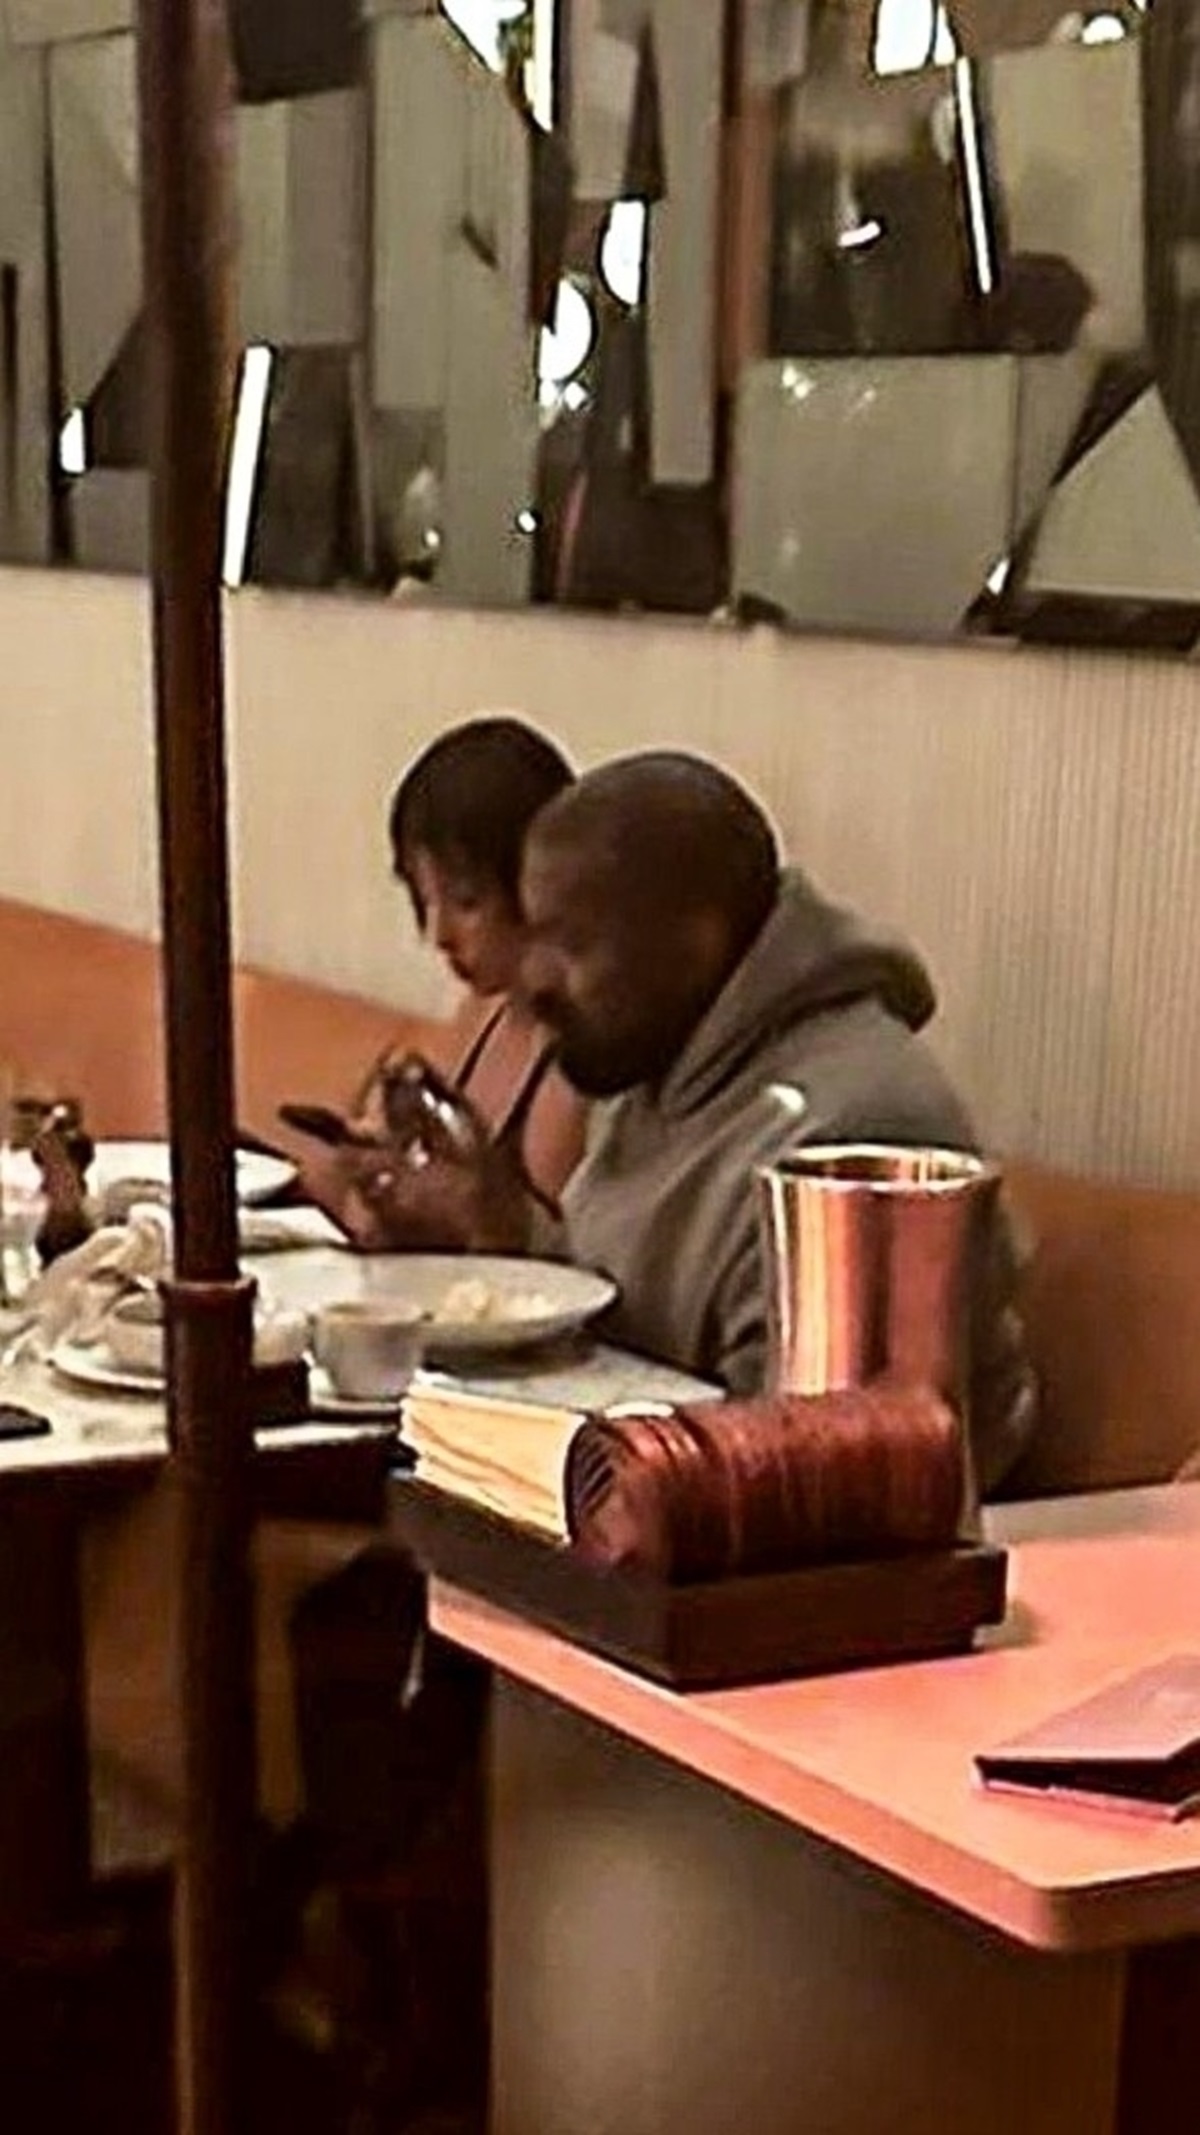 Bianca Censori și Kanye West în timp ce iau masa împreună la un restaurant